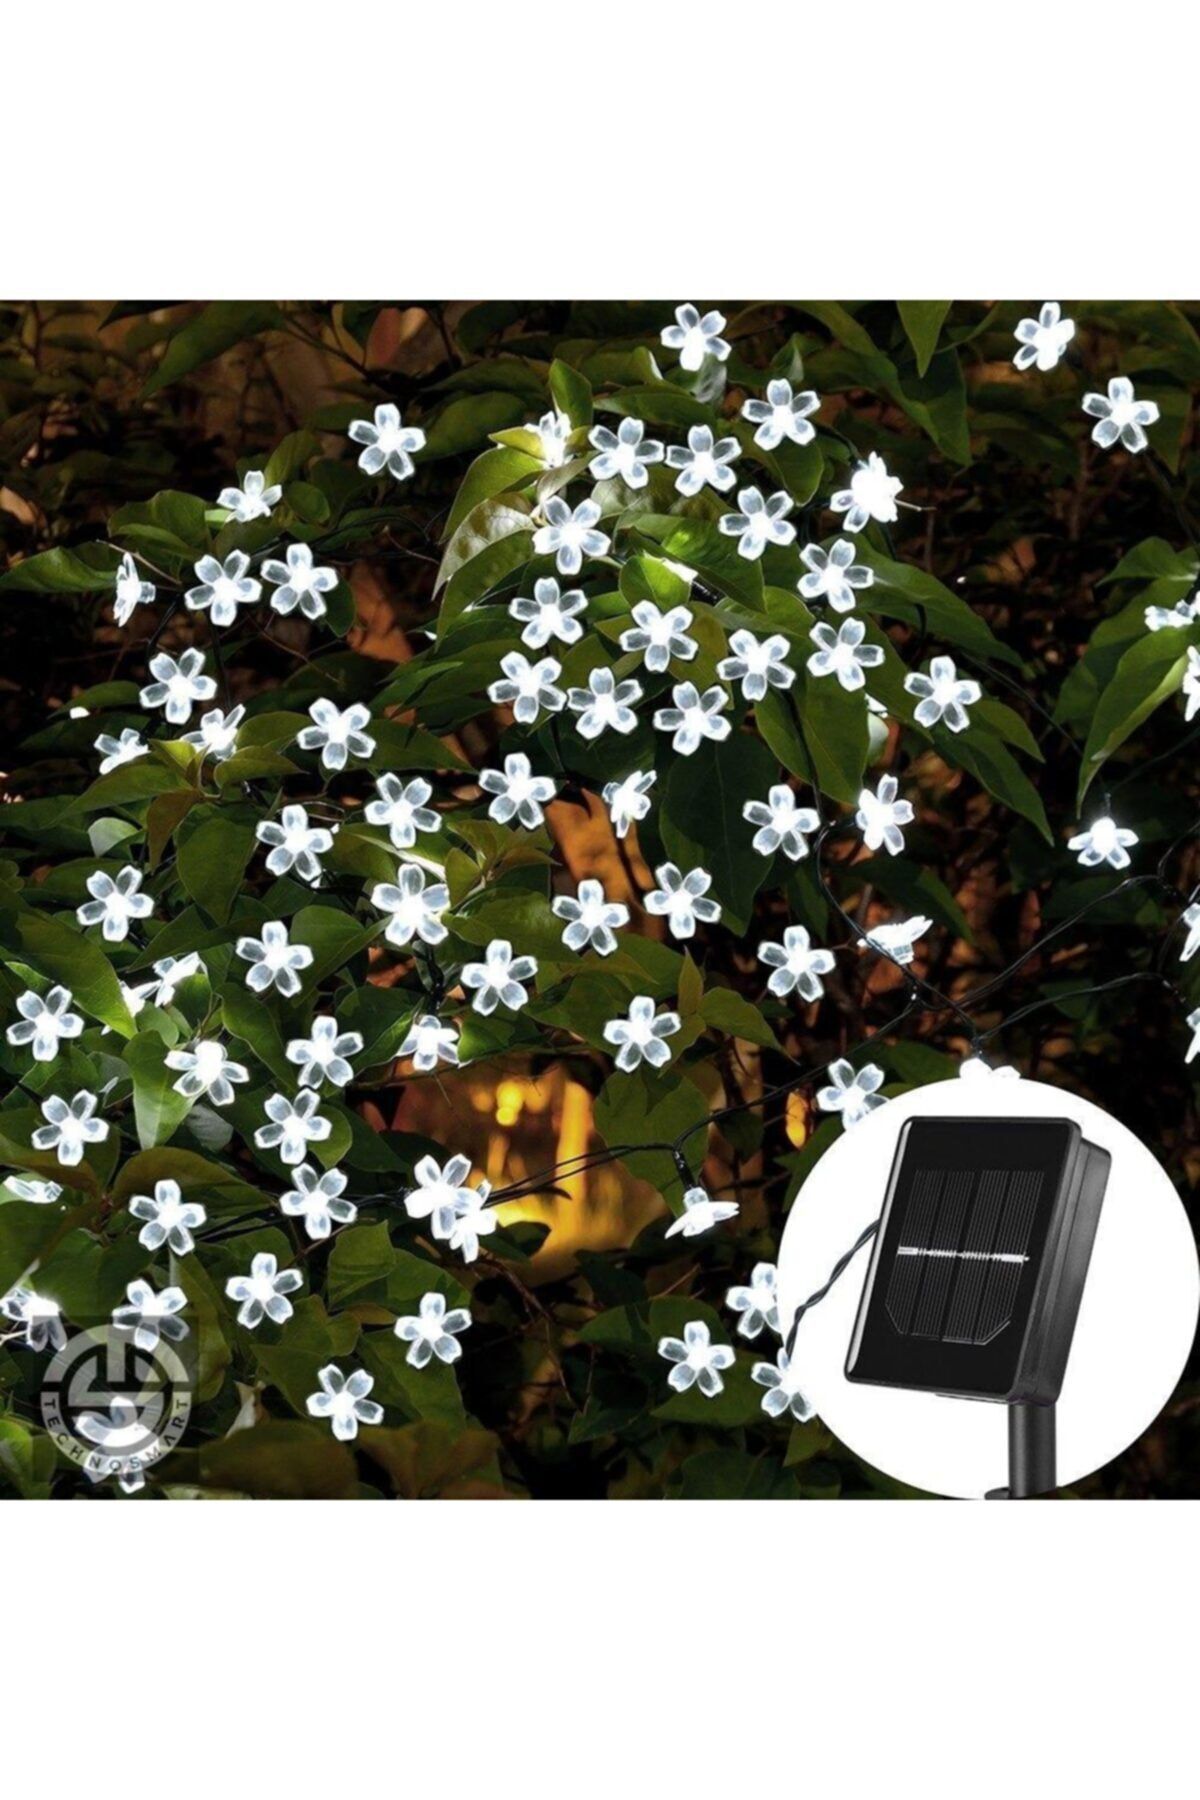 TechnoSmart 30 Ledli Solar Çiçekli Beyaz Işık Bayçe Aydınlatma Dekorasyon Güneş Enerjili